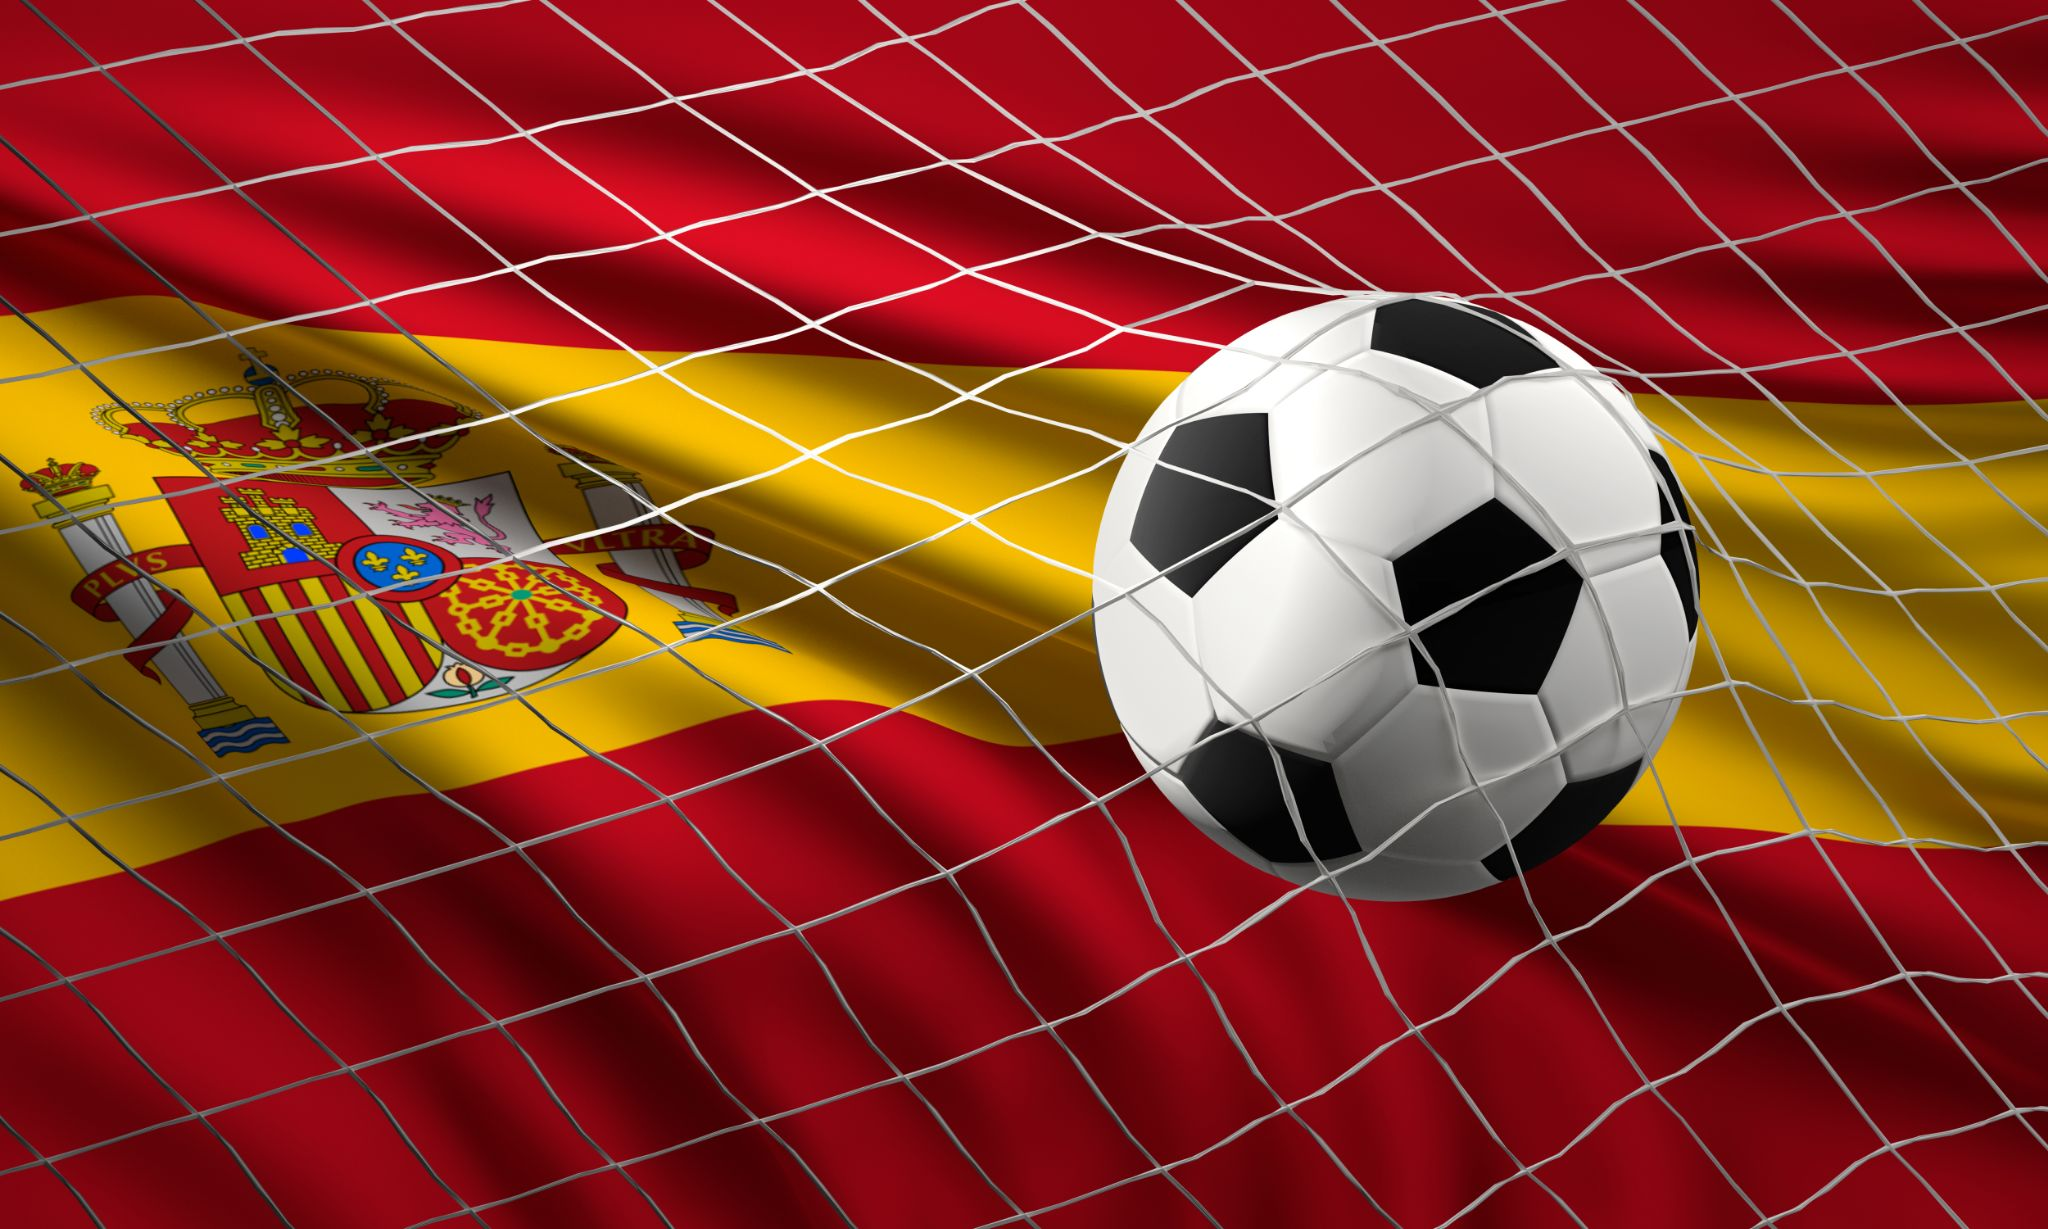 A football on Spain’s flag inside a goal